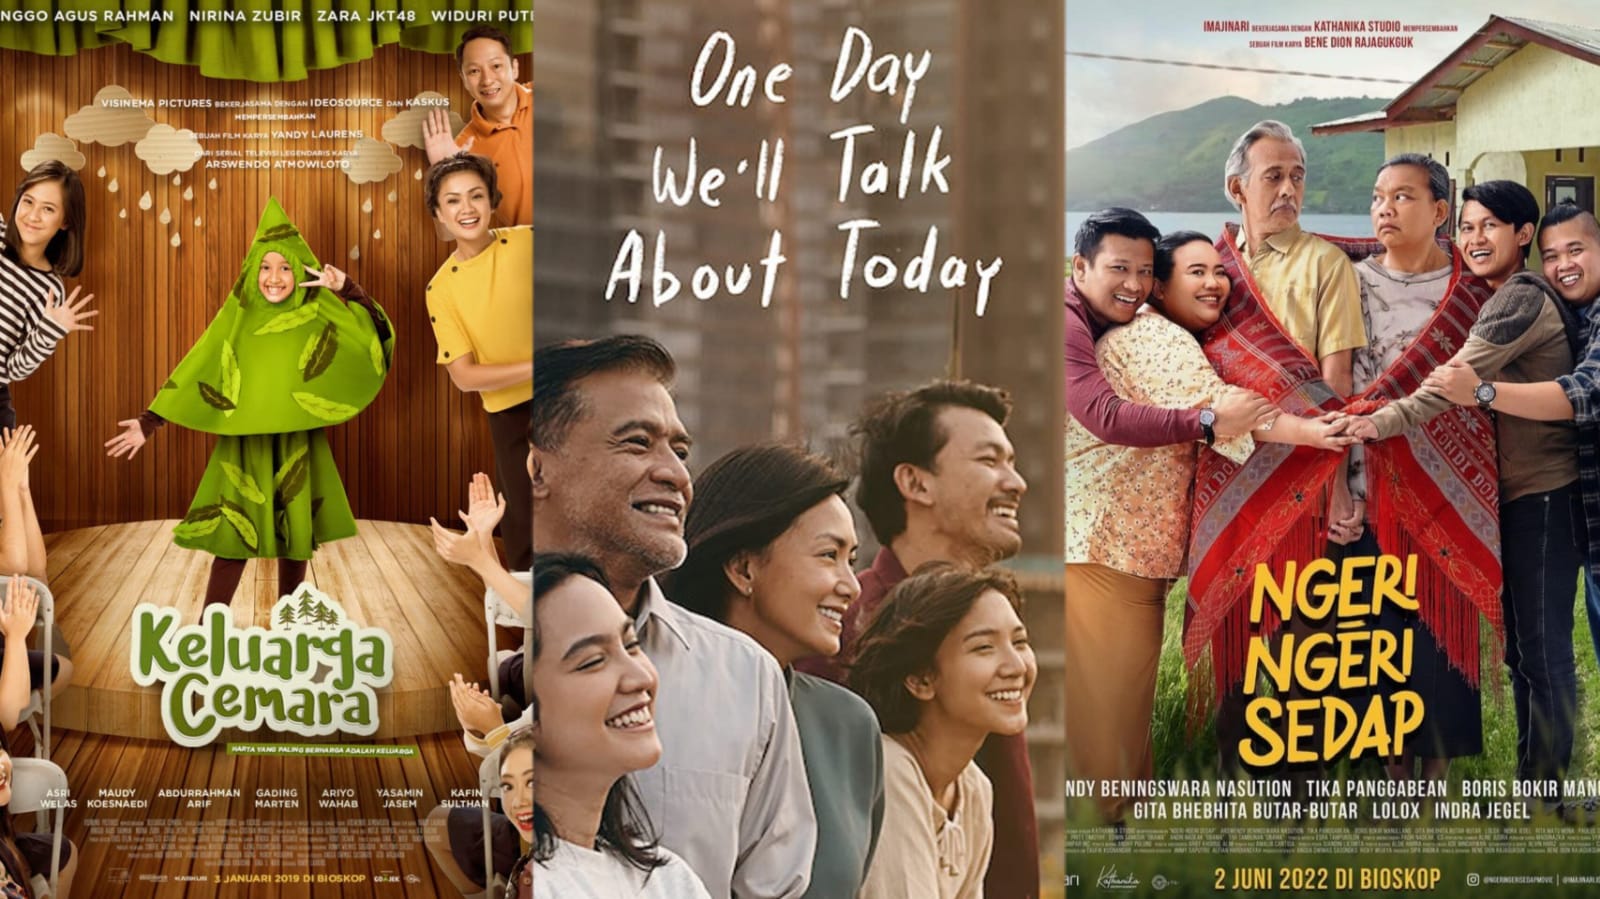 Cocok di Tonton Saat Liburan! Ini 3 Rekomendasi Film Indonesia Bertema Keluarga, Penuh Nilai Kehidupan